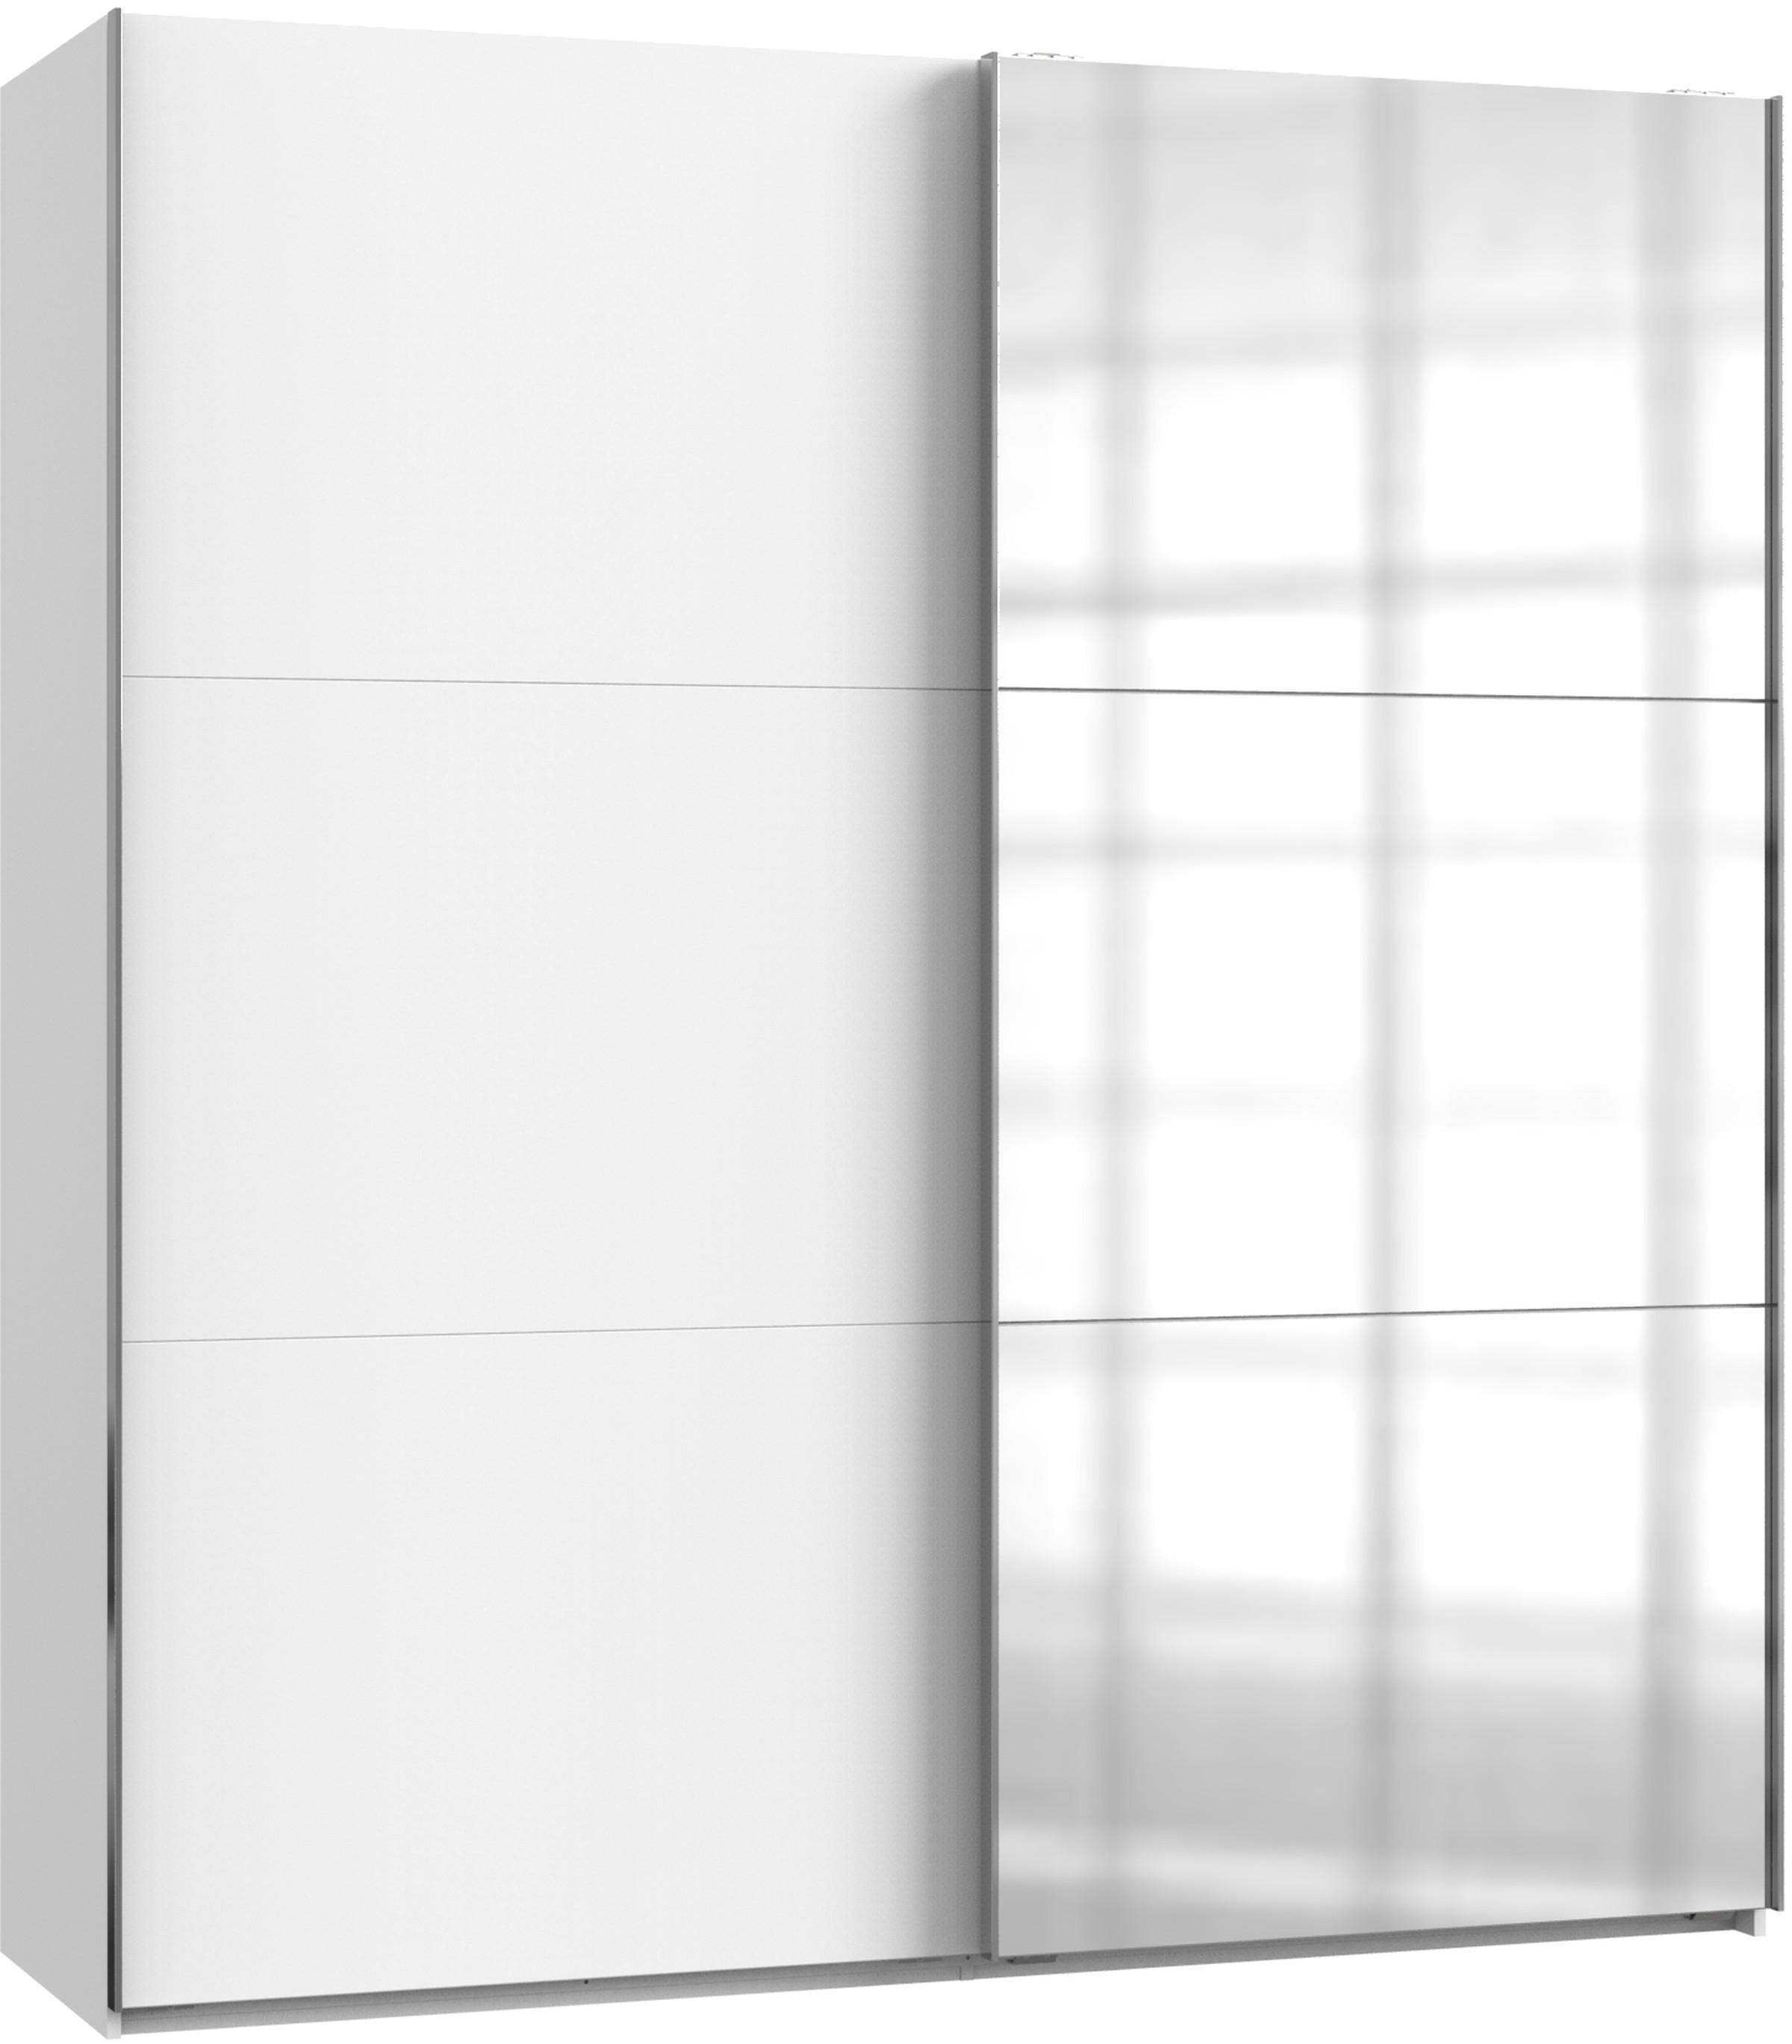 SCHWEBETÜRENSCHRANK 2-türig Weiß  - Chromfarben/Weiß, MODERN (200/216/65cm) - MID.YOU